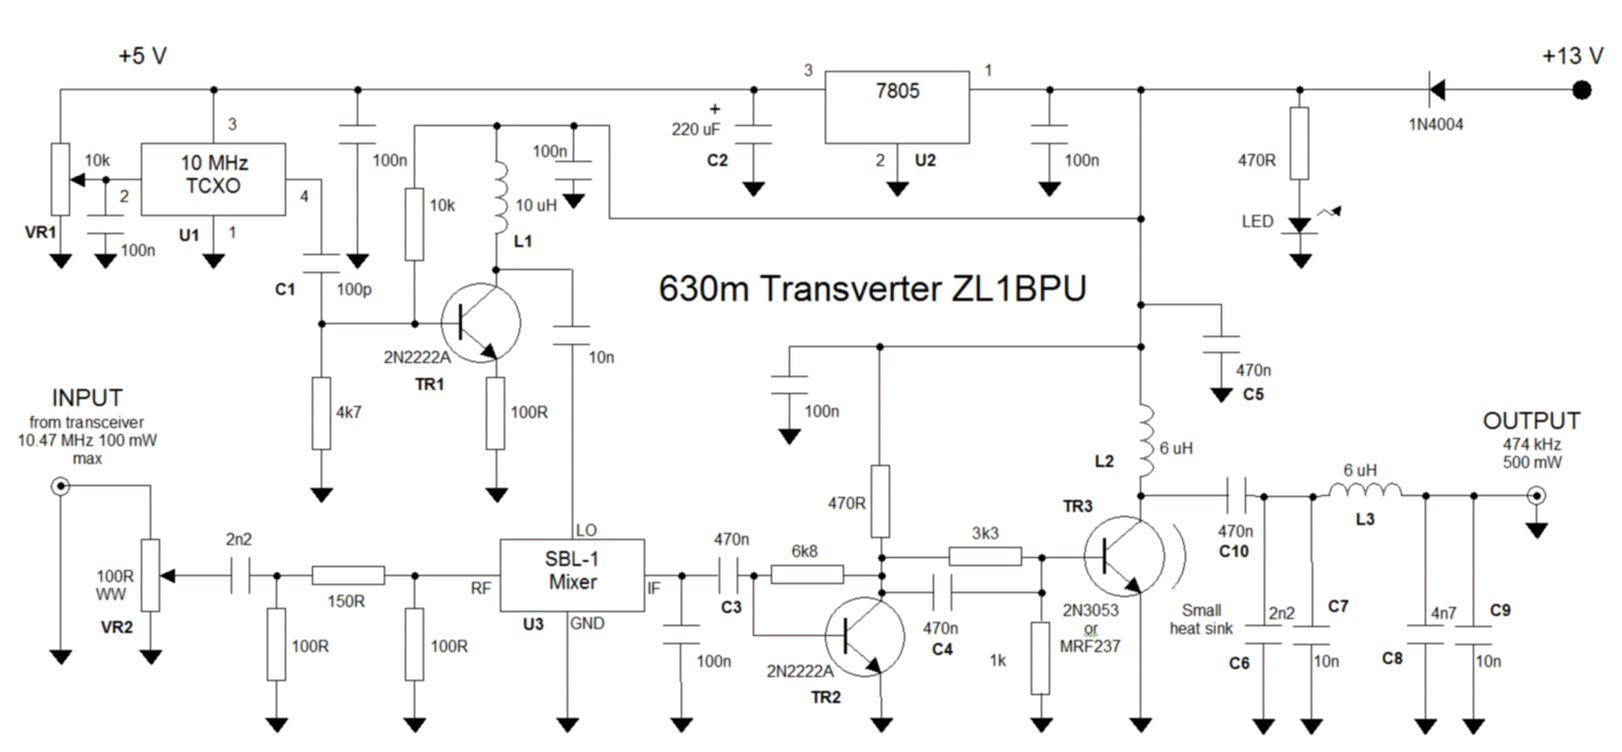 Transverter schematic